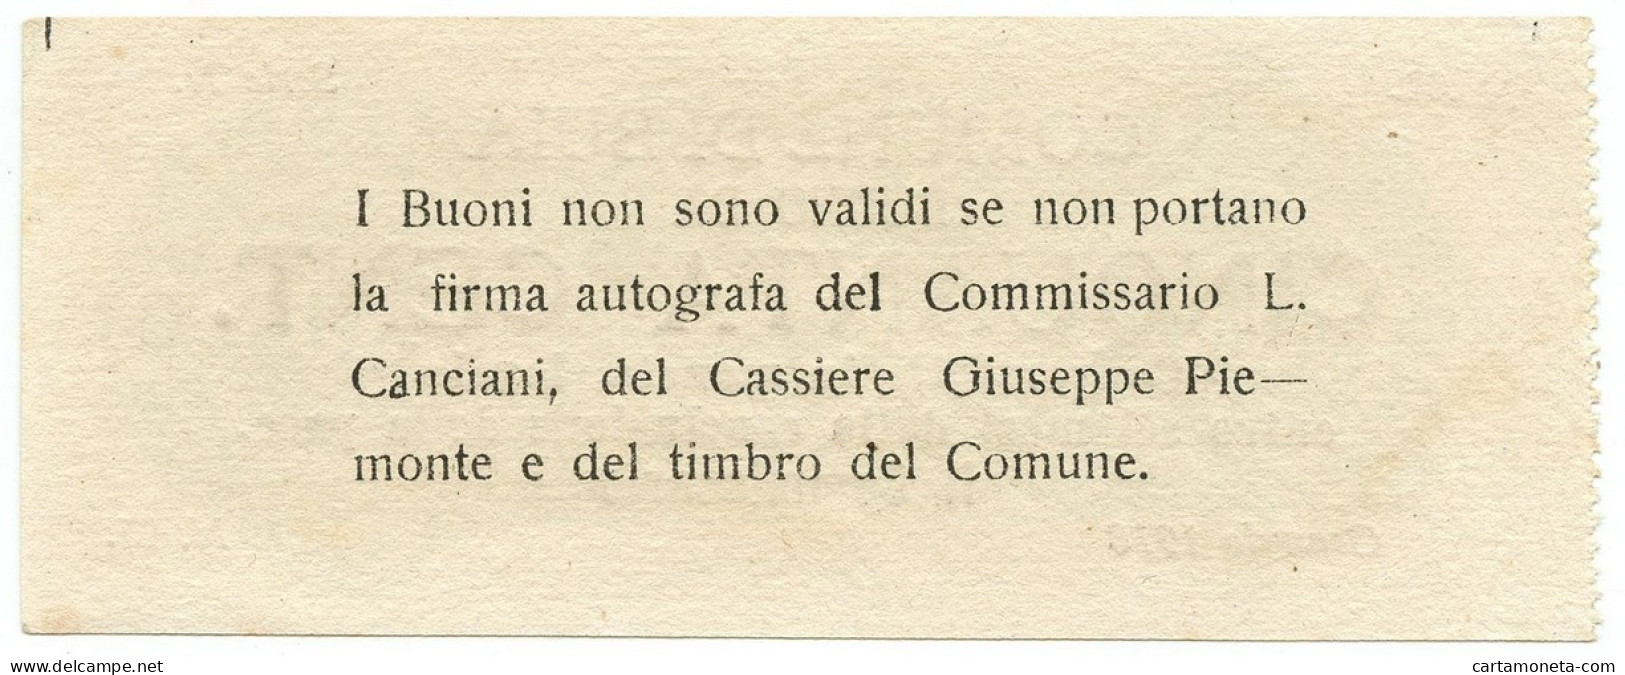 50 CENTESIMI NON EMESSO COMUNE DI BUIA BUONO COMUNALE WWI GENNAIO 1918 SUP+ - Other & Unclassified